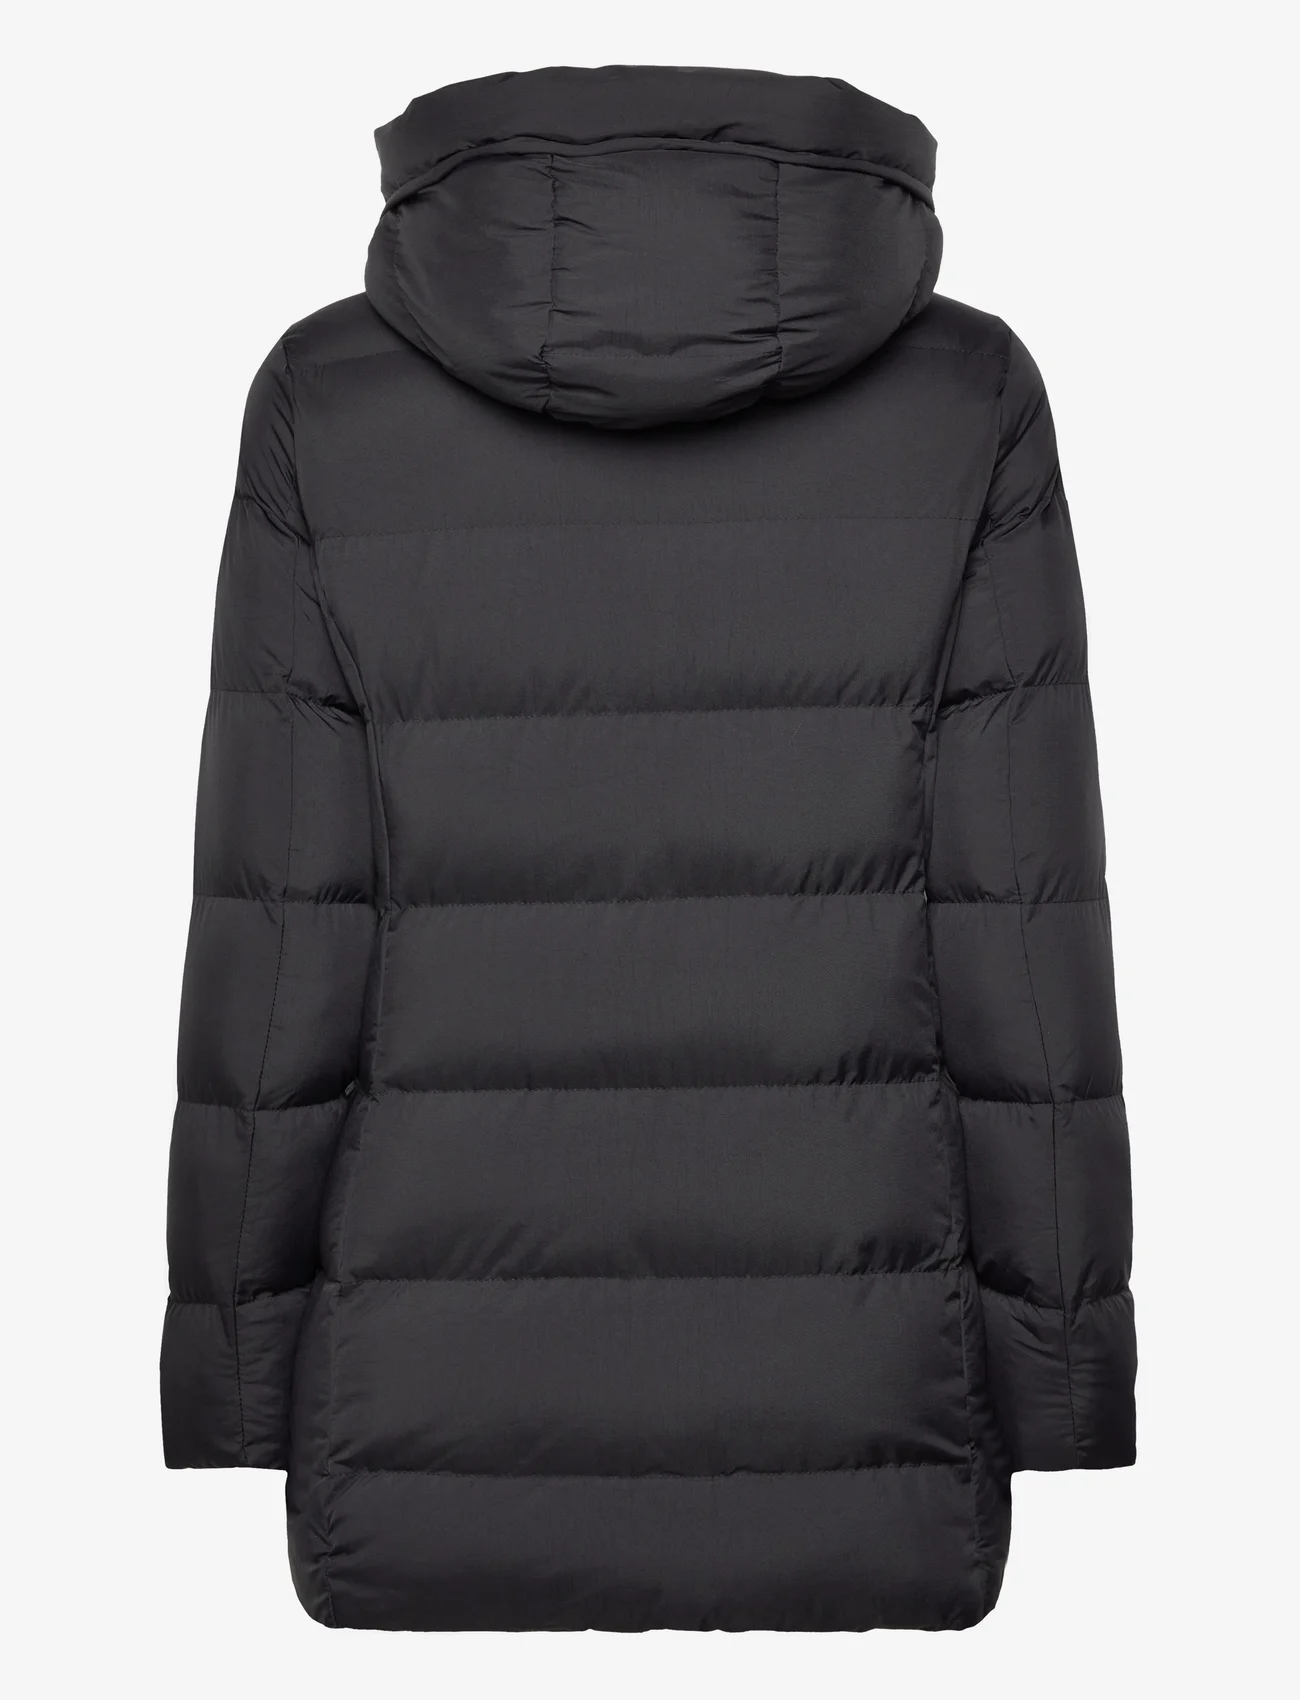 Garcia - ladies outdoor jacket - winterjacken - black - 1